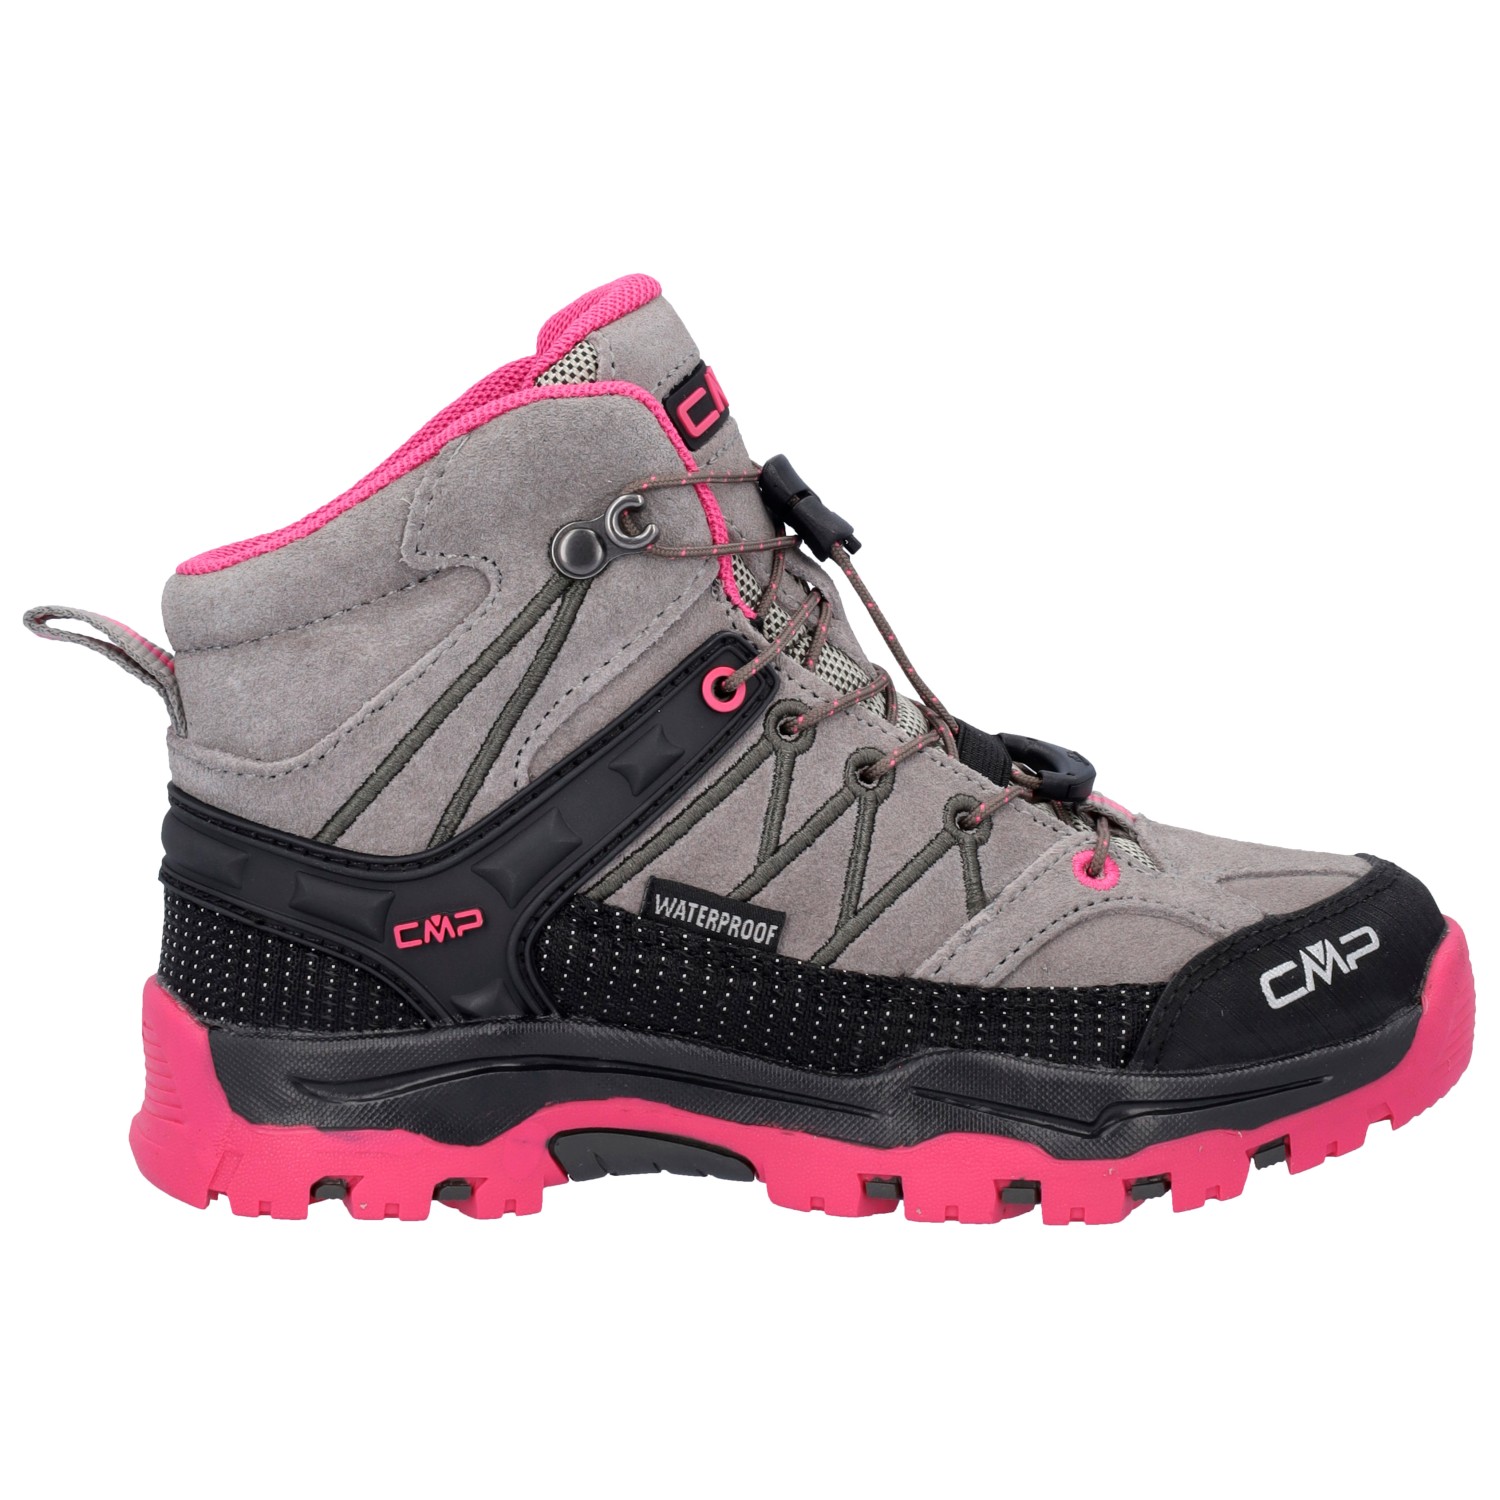 Ботинки для прогулки Cmp Kid's Rigel Mid Trekking Shoes Waterproof, цвет Mandorla/Fuxia